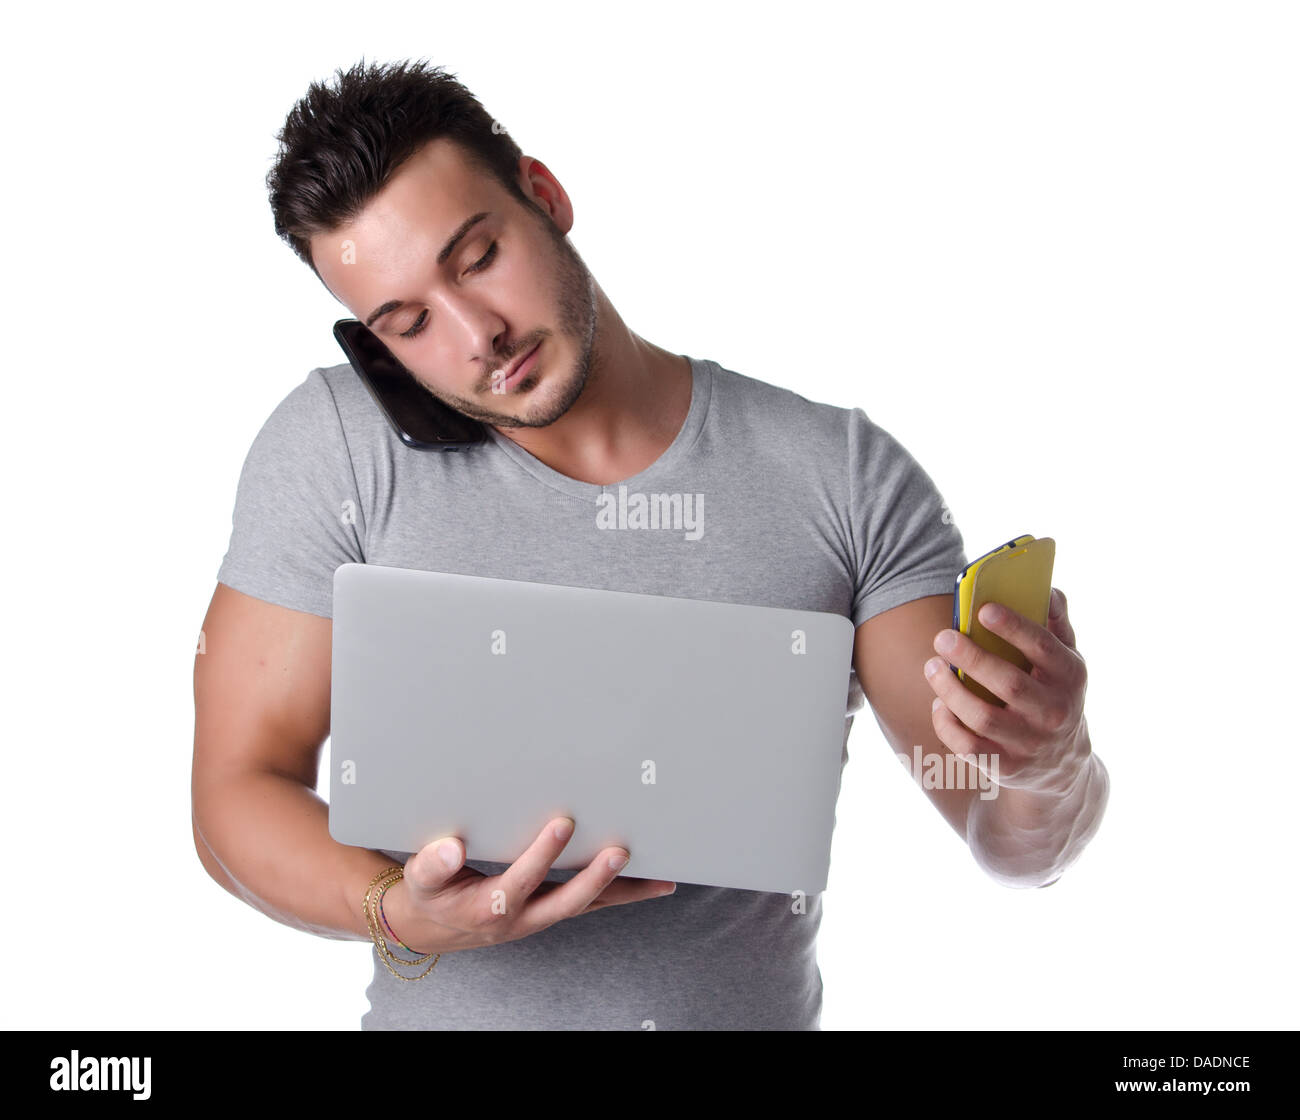 Zu viel Technik. Junger Mann mit zwei Handys und einem Laptop-Computer,  isoliert auf weiss Stockfotografie - Alamy